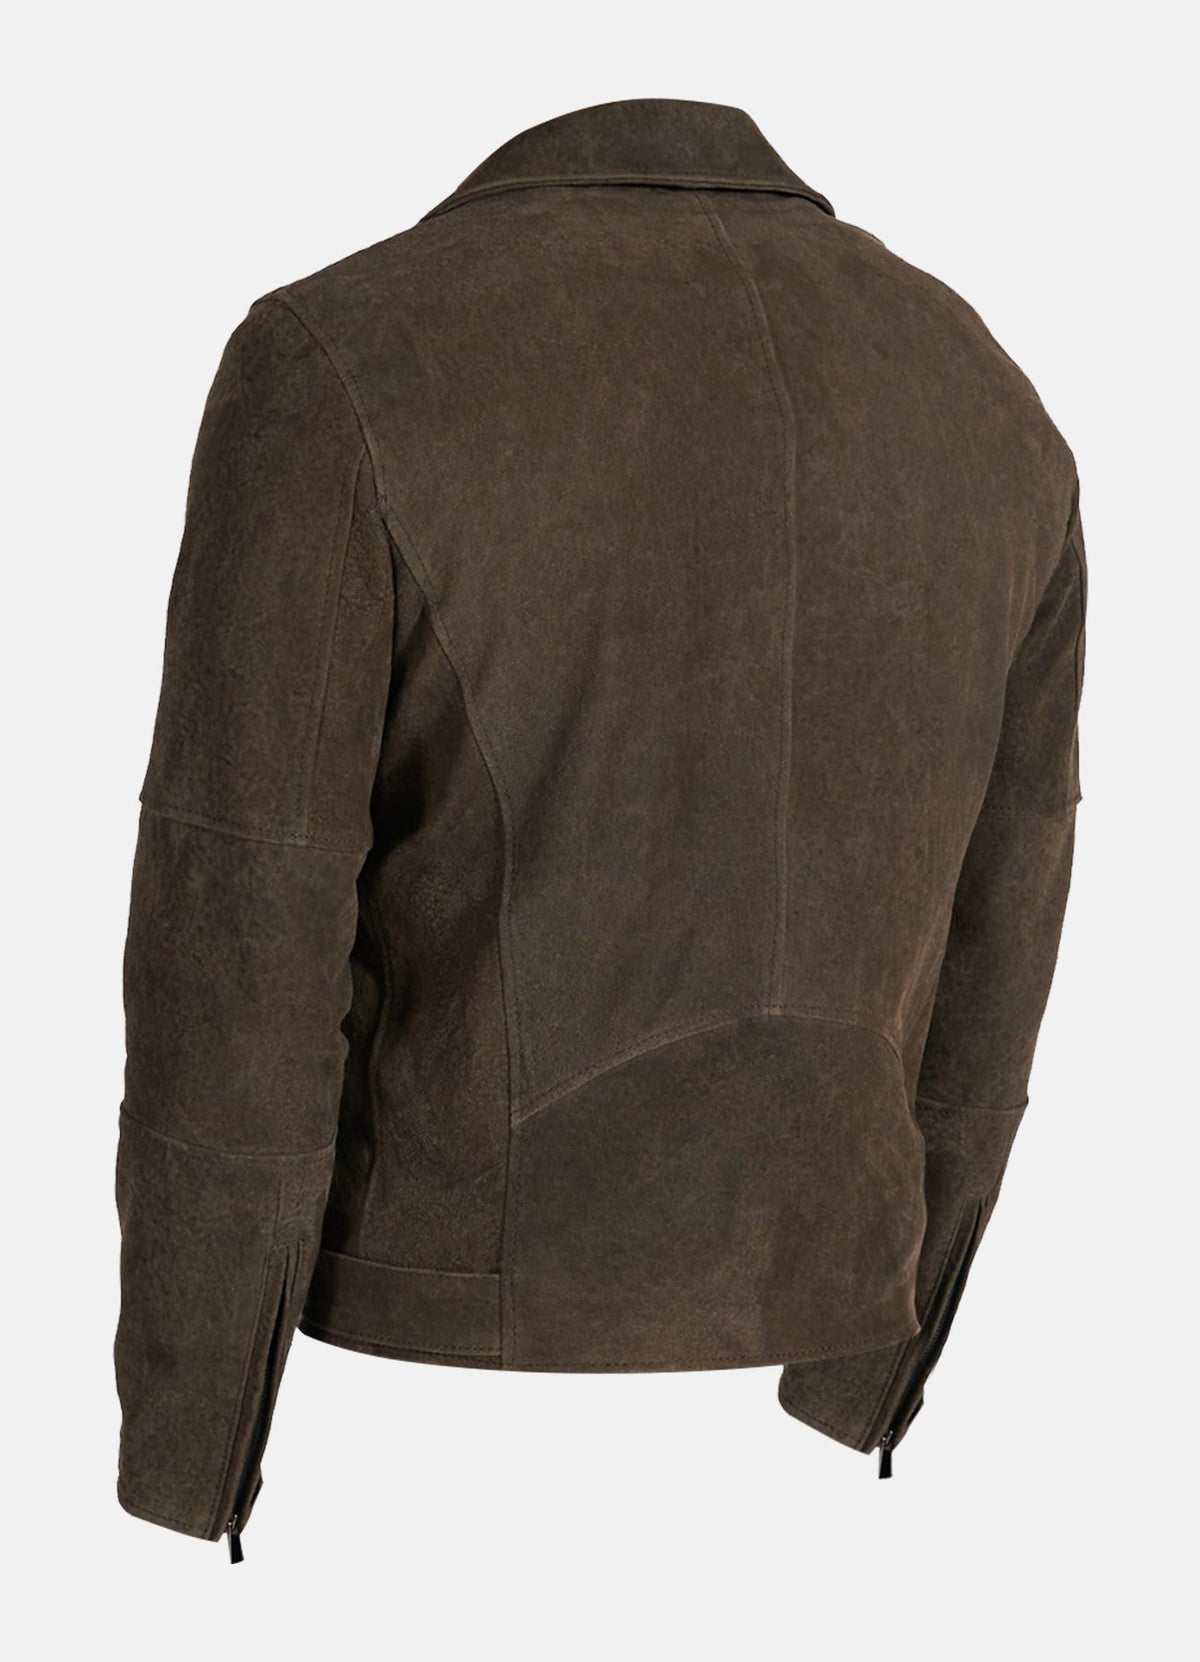 Mens Soft Umber Suede Leather Jacket